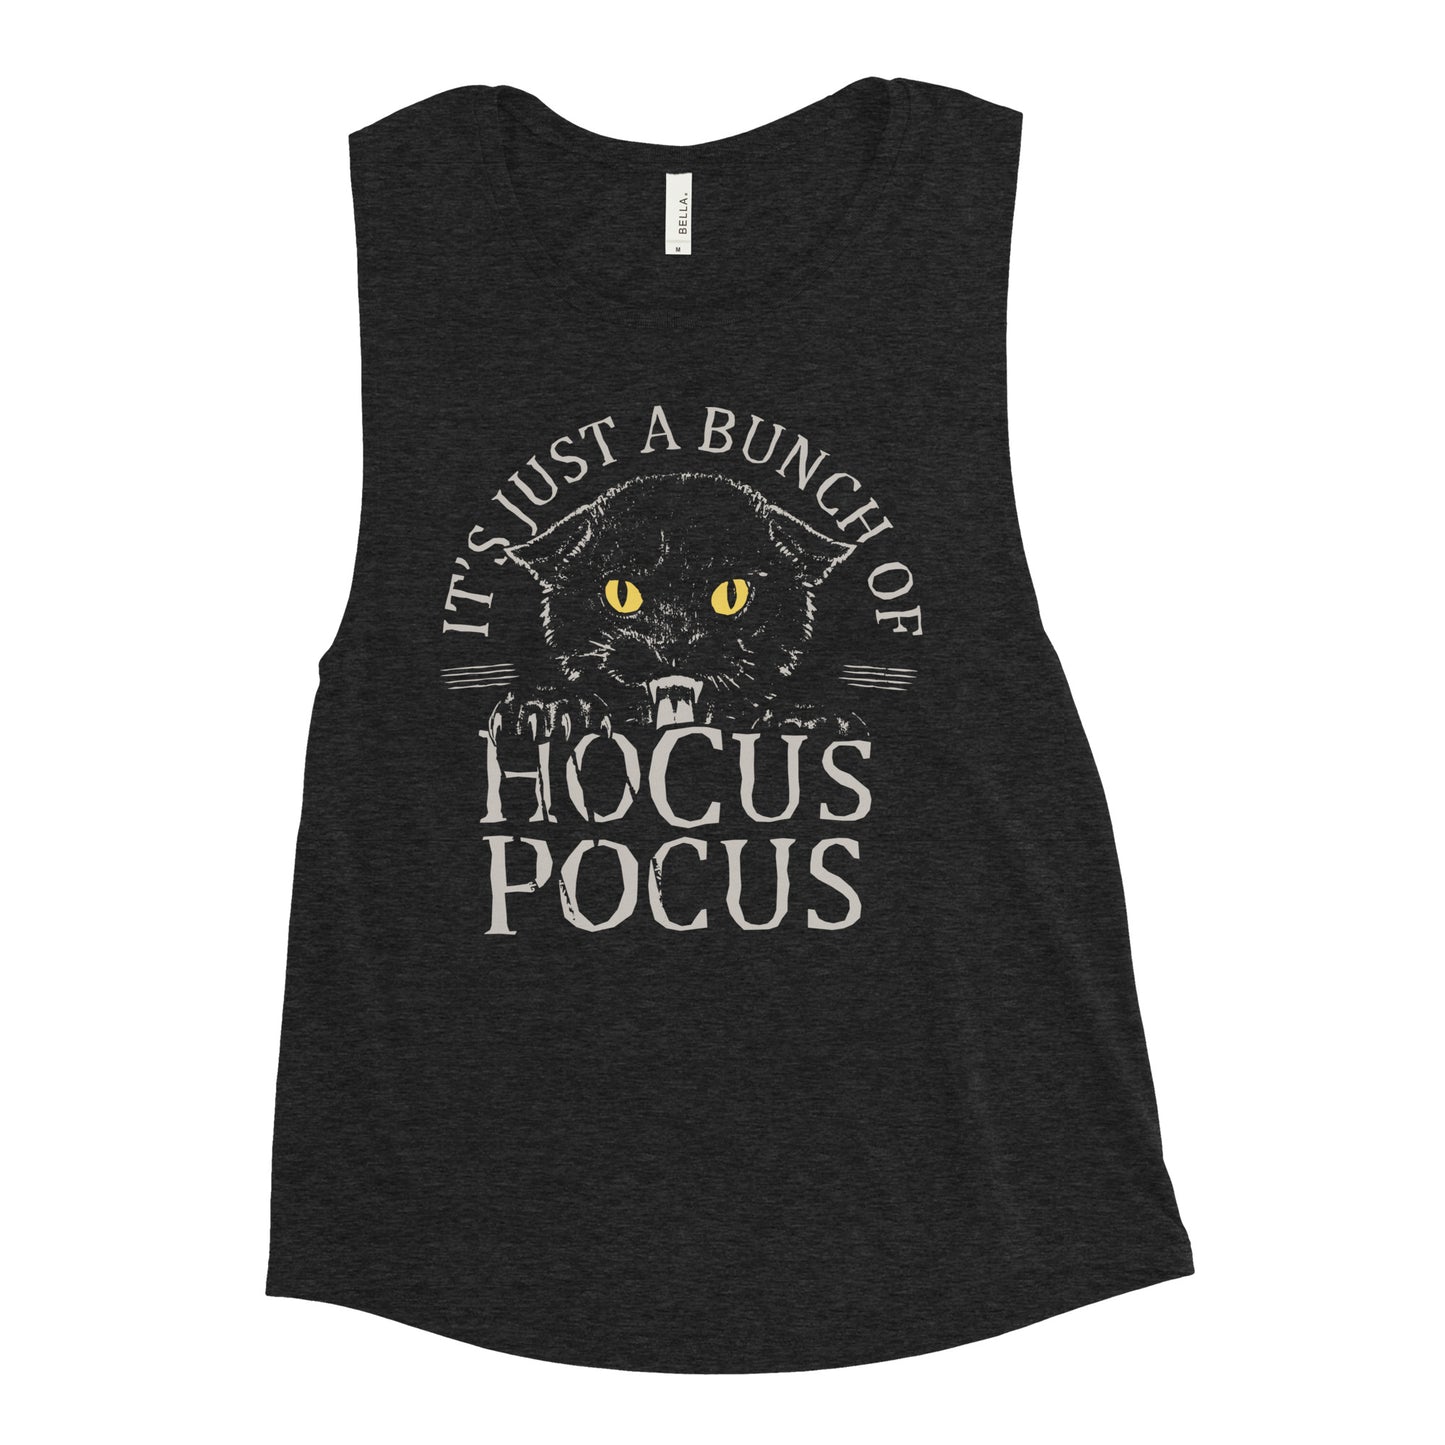 Hocus Pocus Women's Muscle Tank